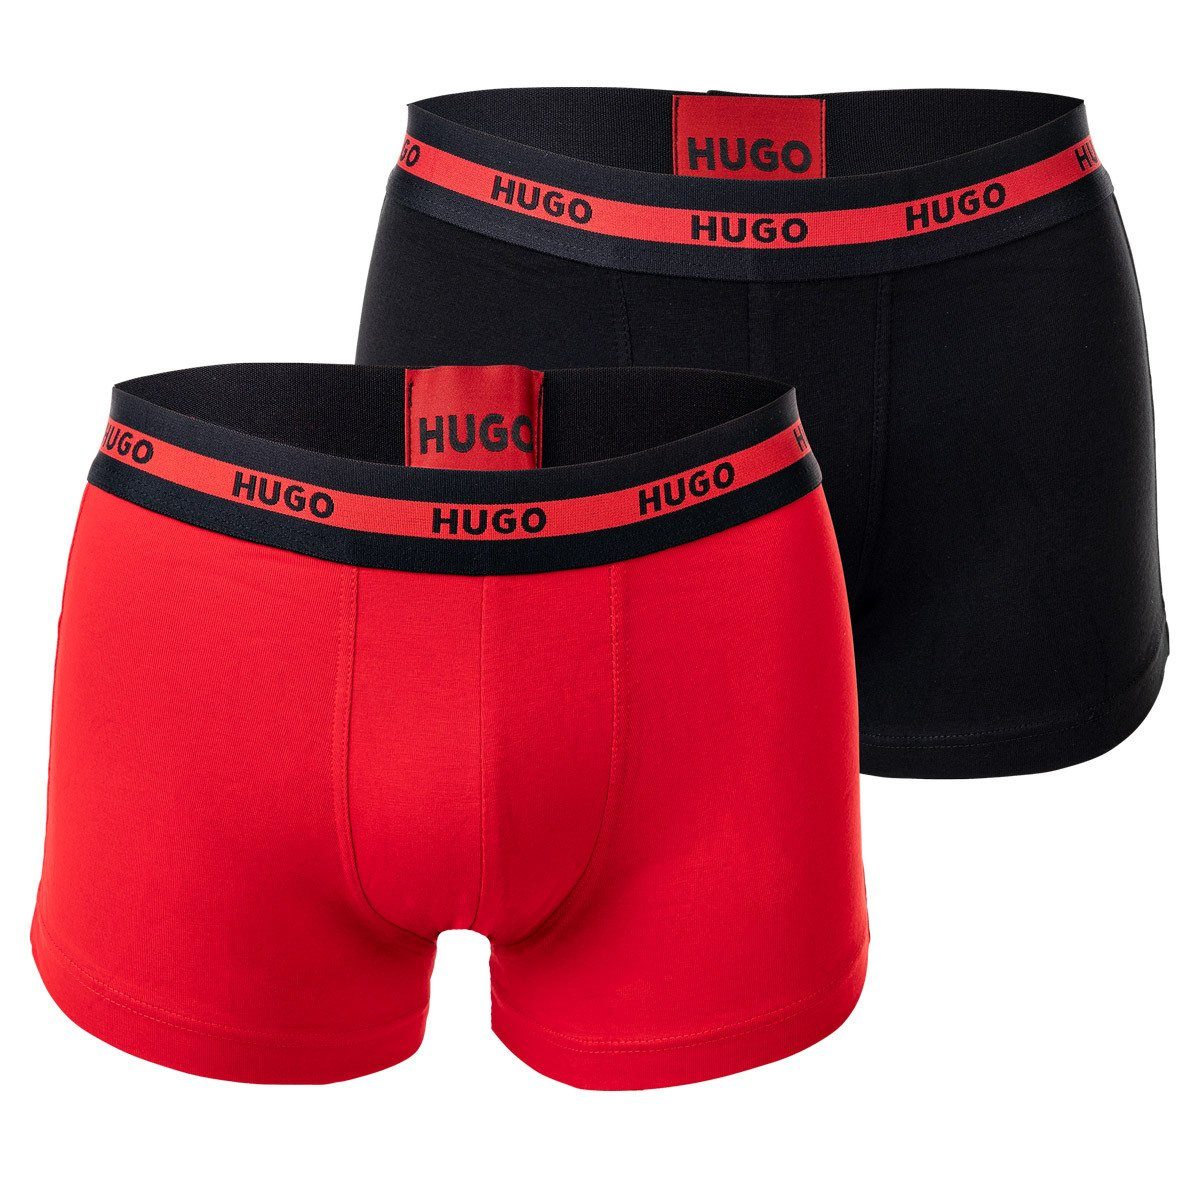 HUGO Boxer Herren Boxer Shorts, 2er Pack - Trunks Twin Pack Rot